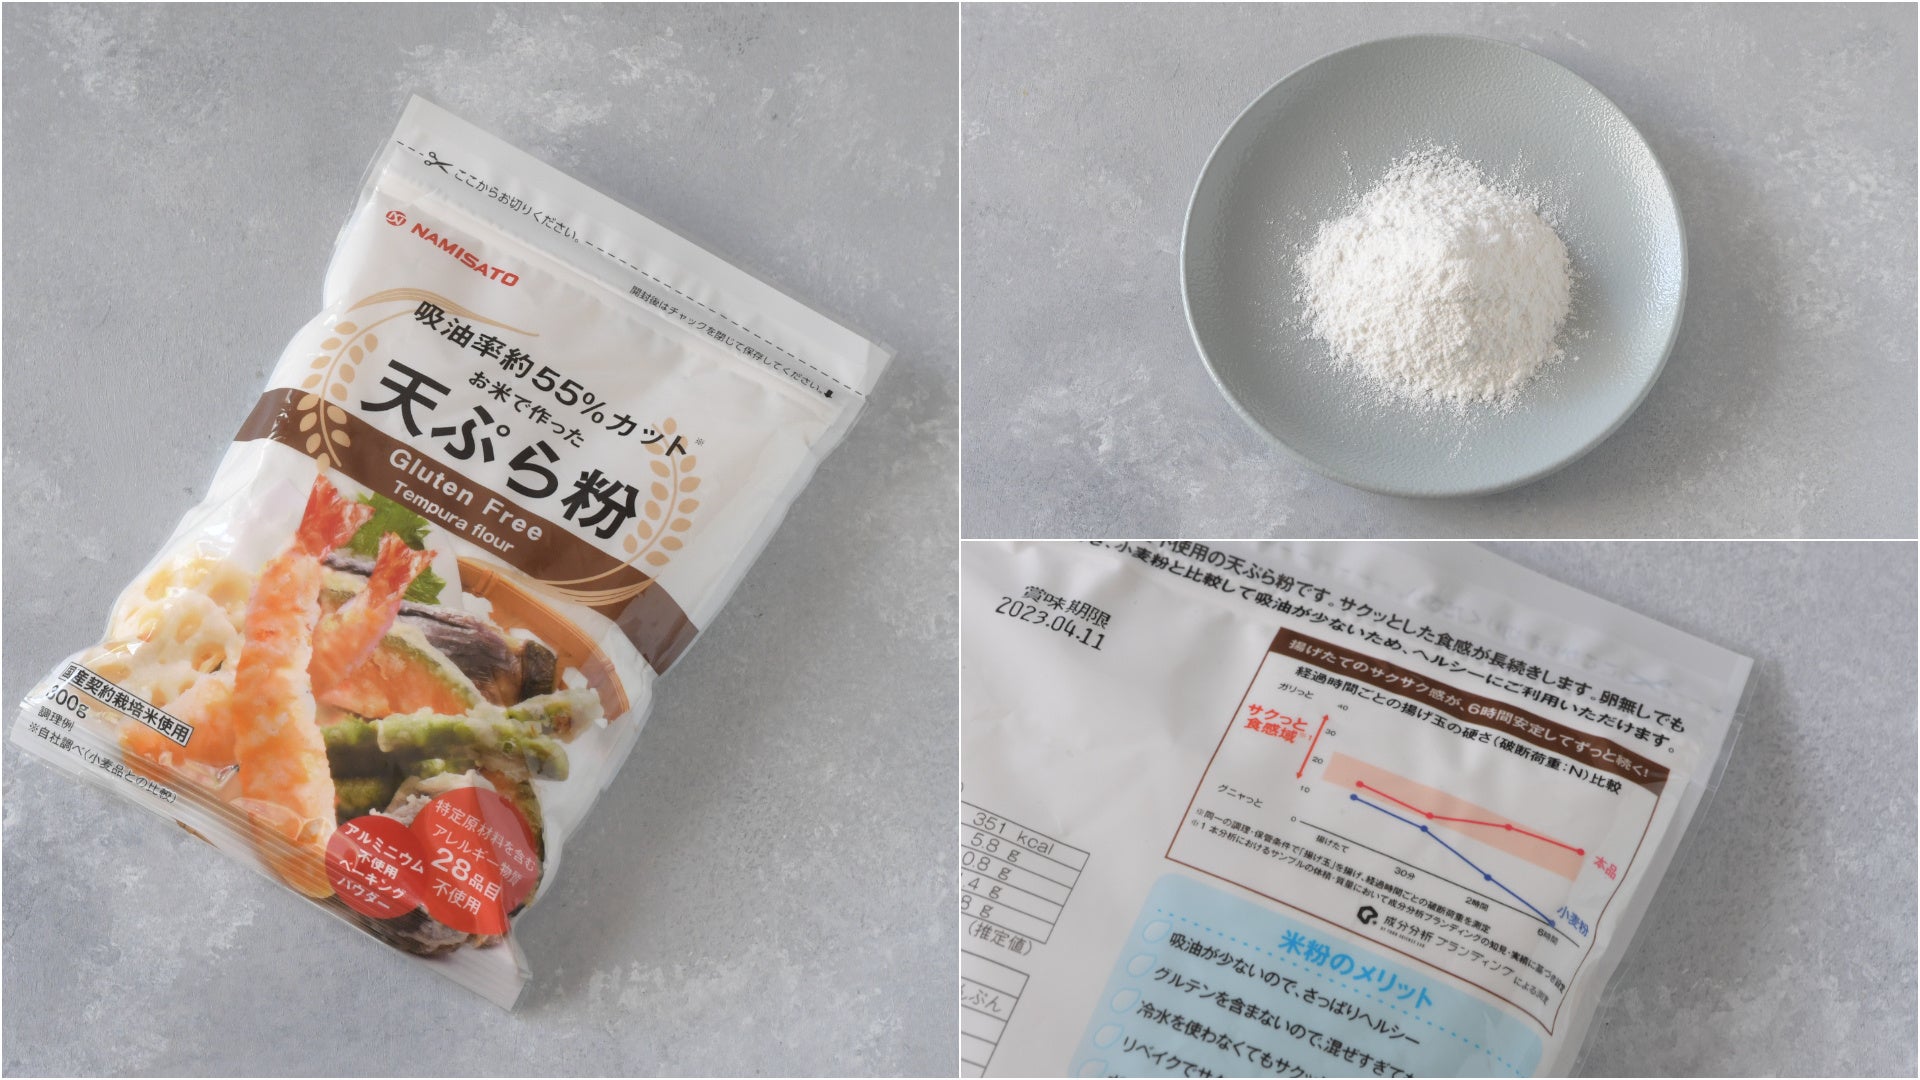 米粉の製造販売を手がける株式会社 波里の米粉で作った天ぷらは一般的な小麦粉で作った天ぷらと比較してサクサク感が43.53〜44.77倍であることを証明